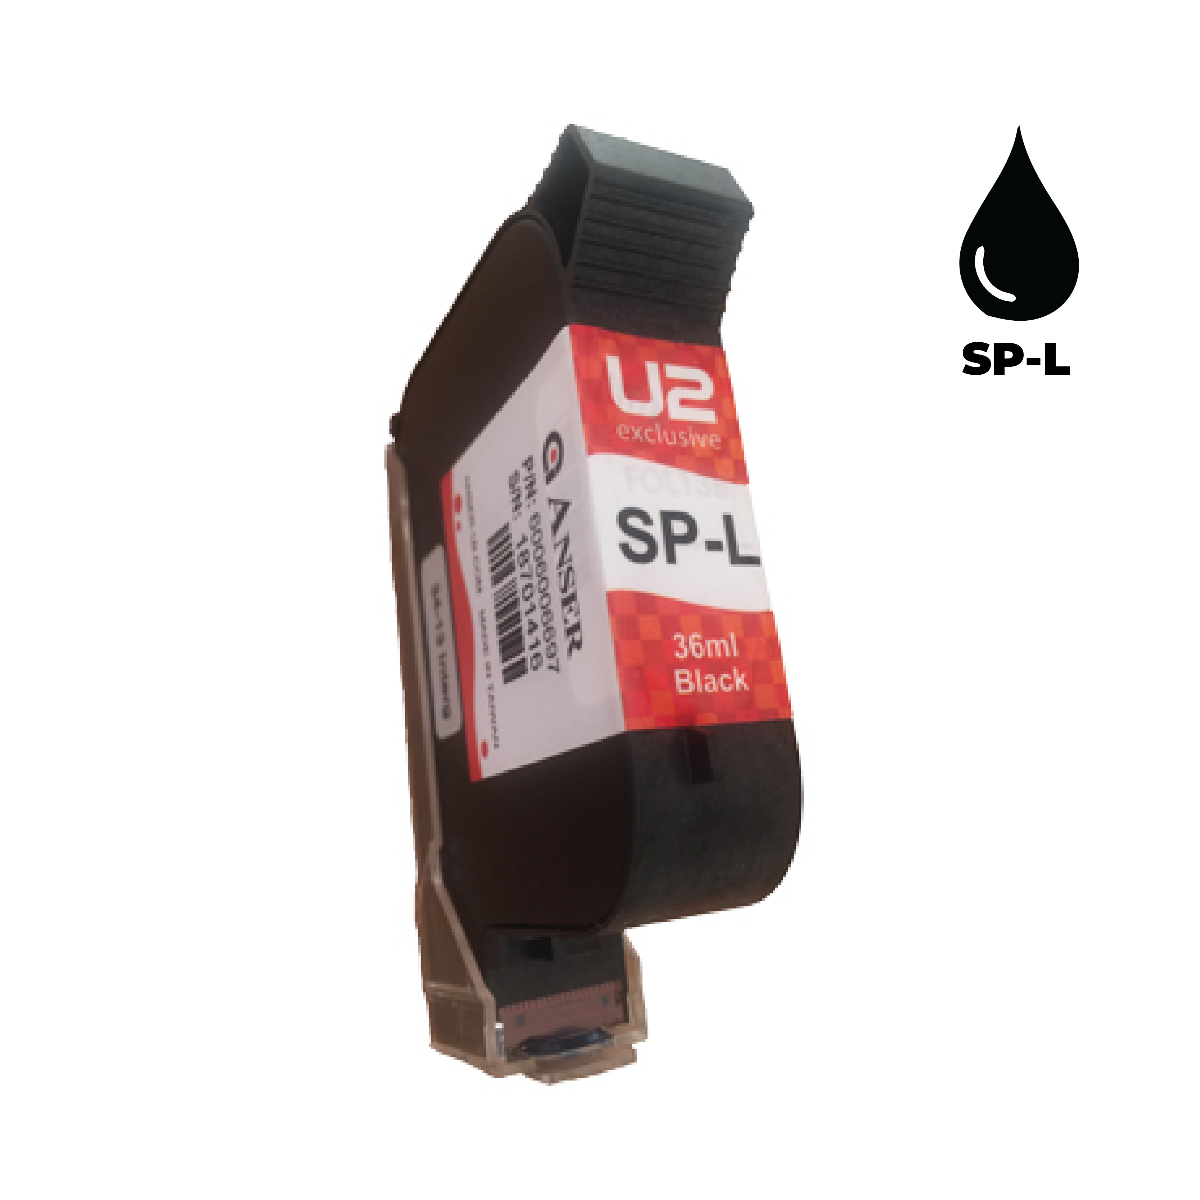 Anser SP-L Black Ink Cartridge (36ml) Solvent Based